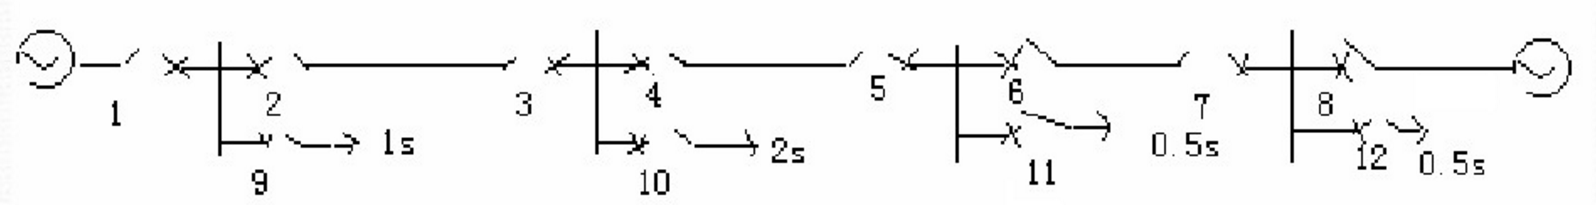 试确定图2－3所示网络中过电流保护1～保护8的动作时限，并确定哪些保护需加方向性元件。试确定图2-3